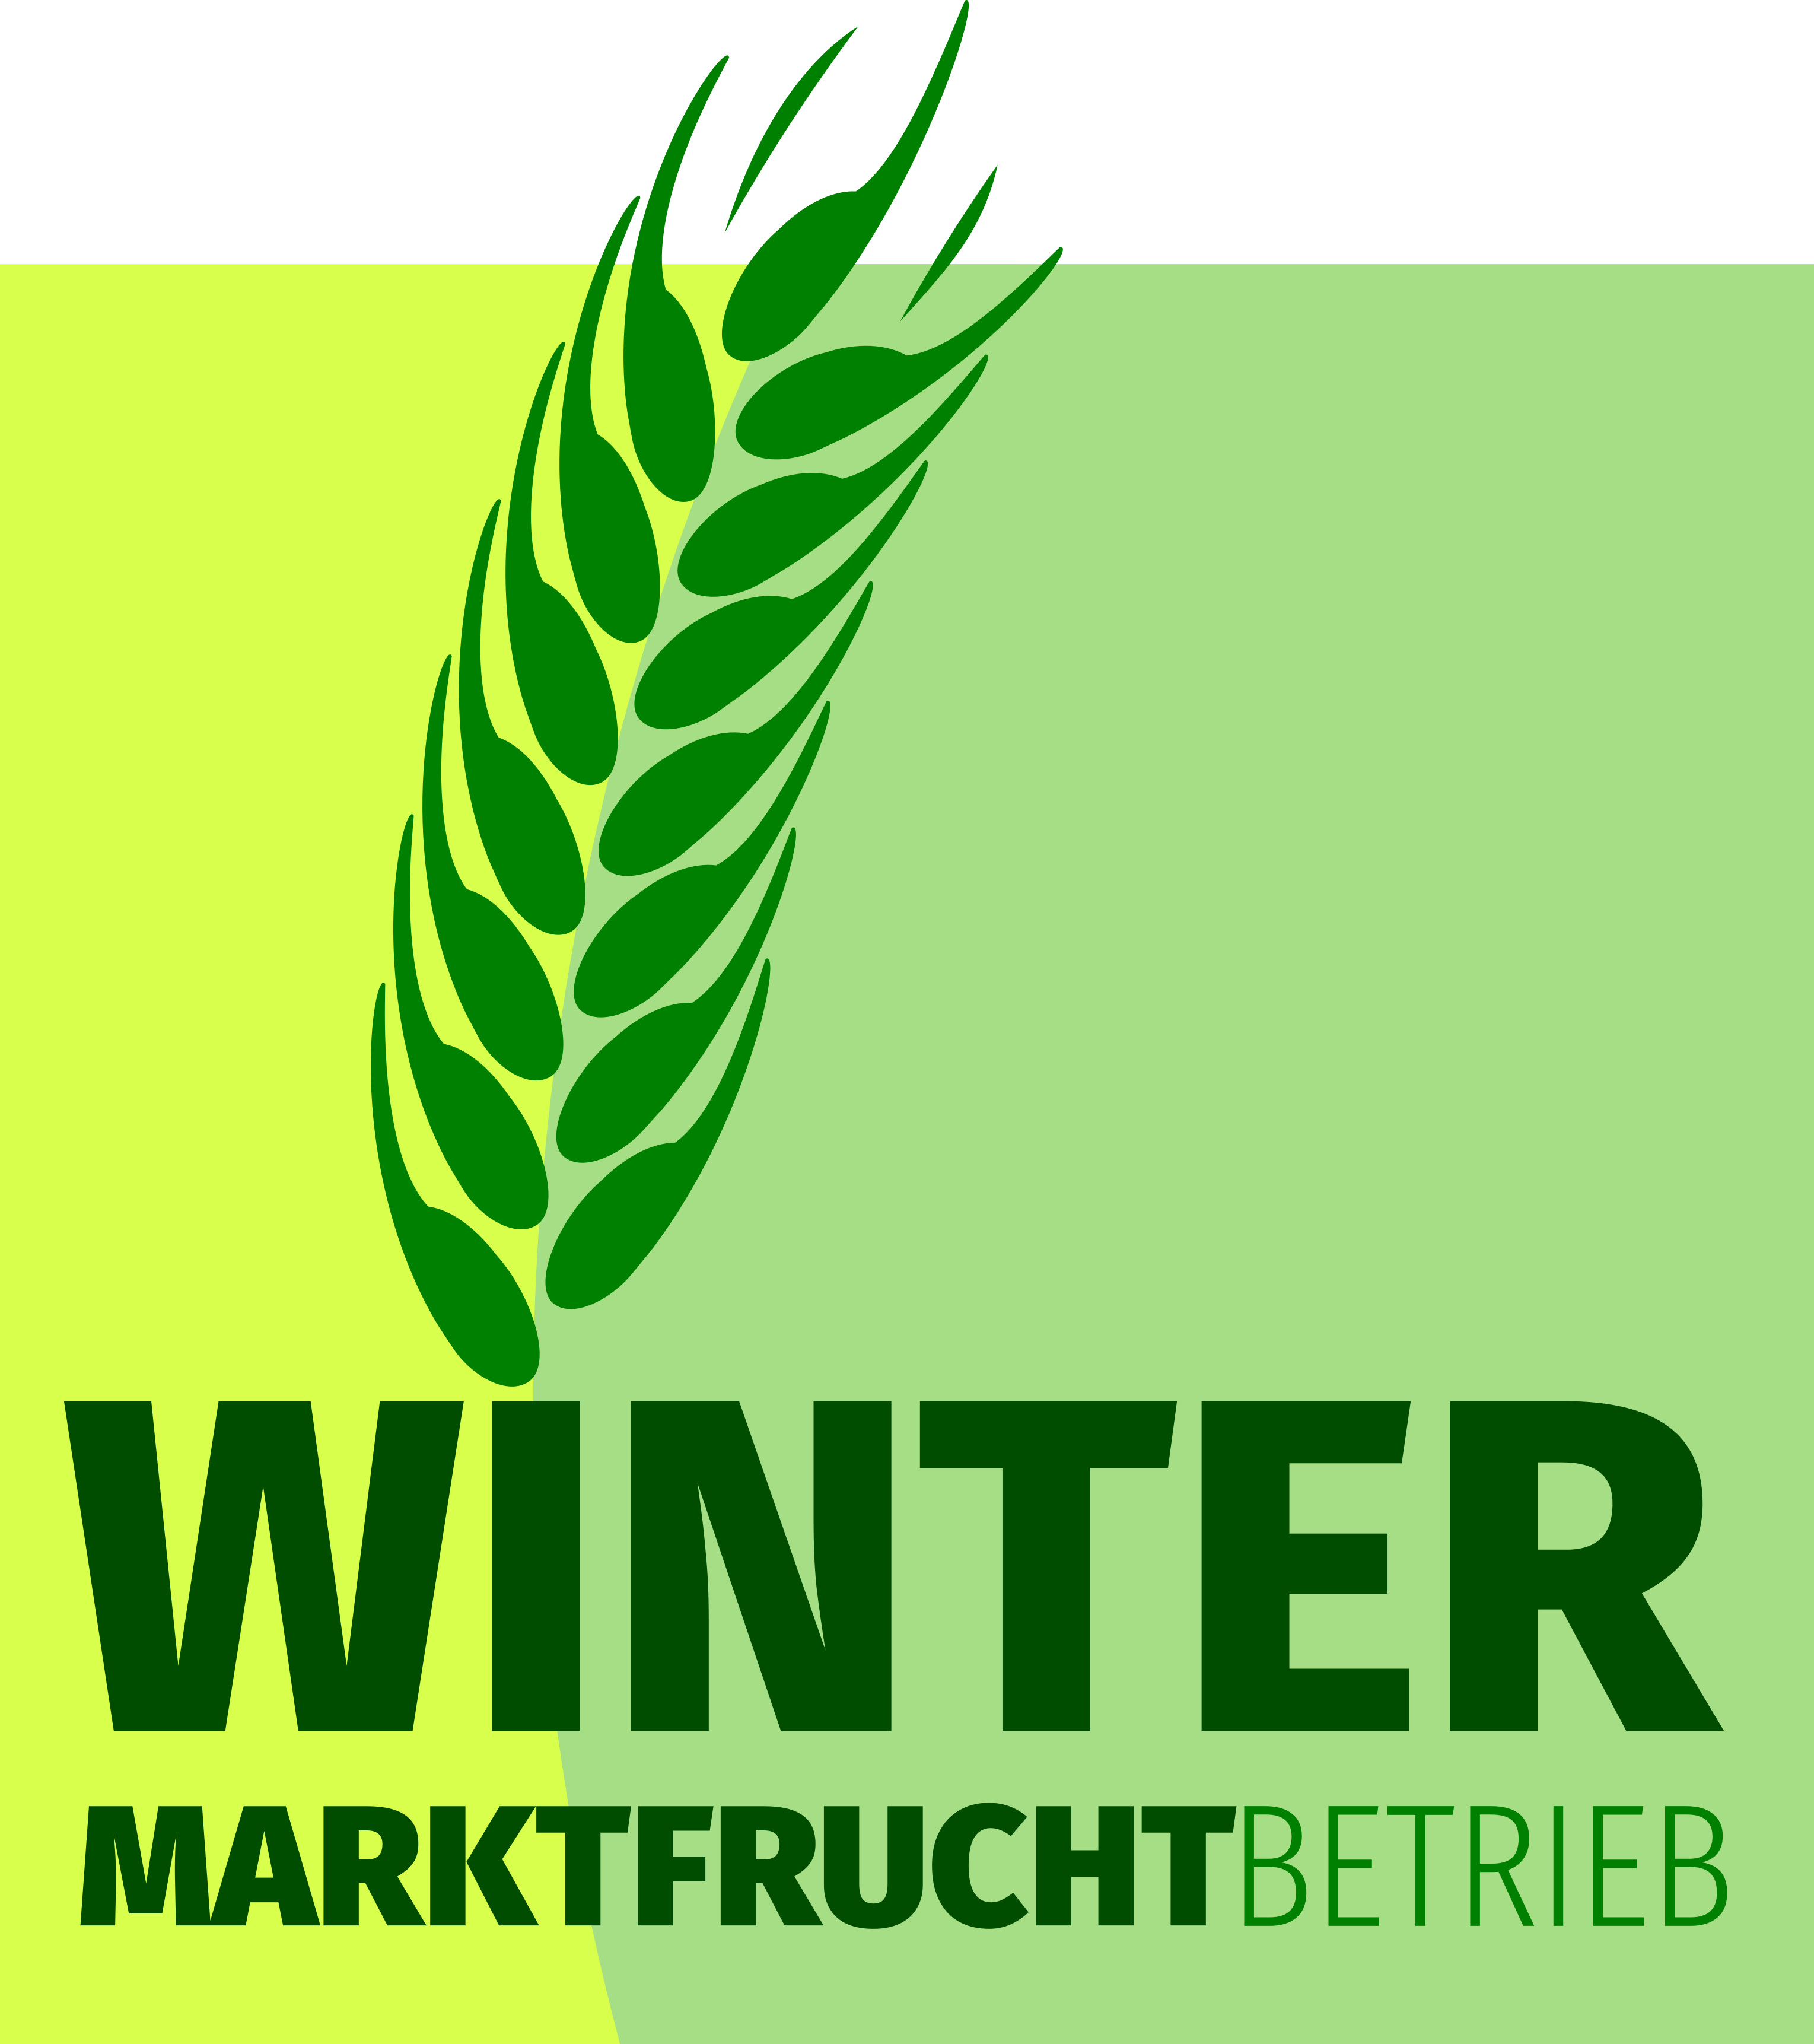 Marktfrucht Winter Althen